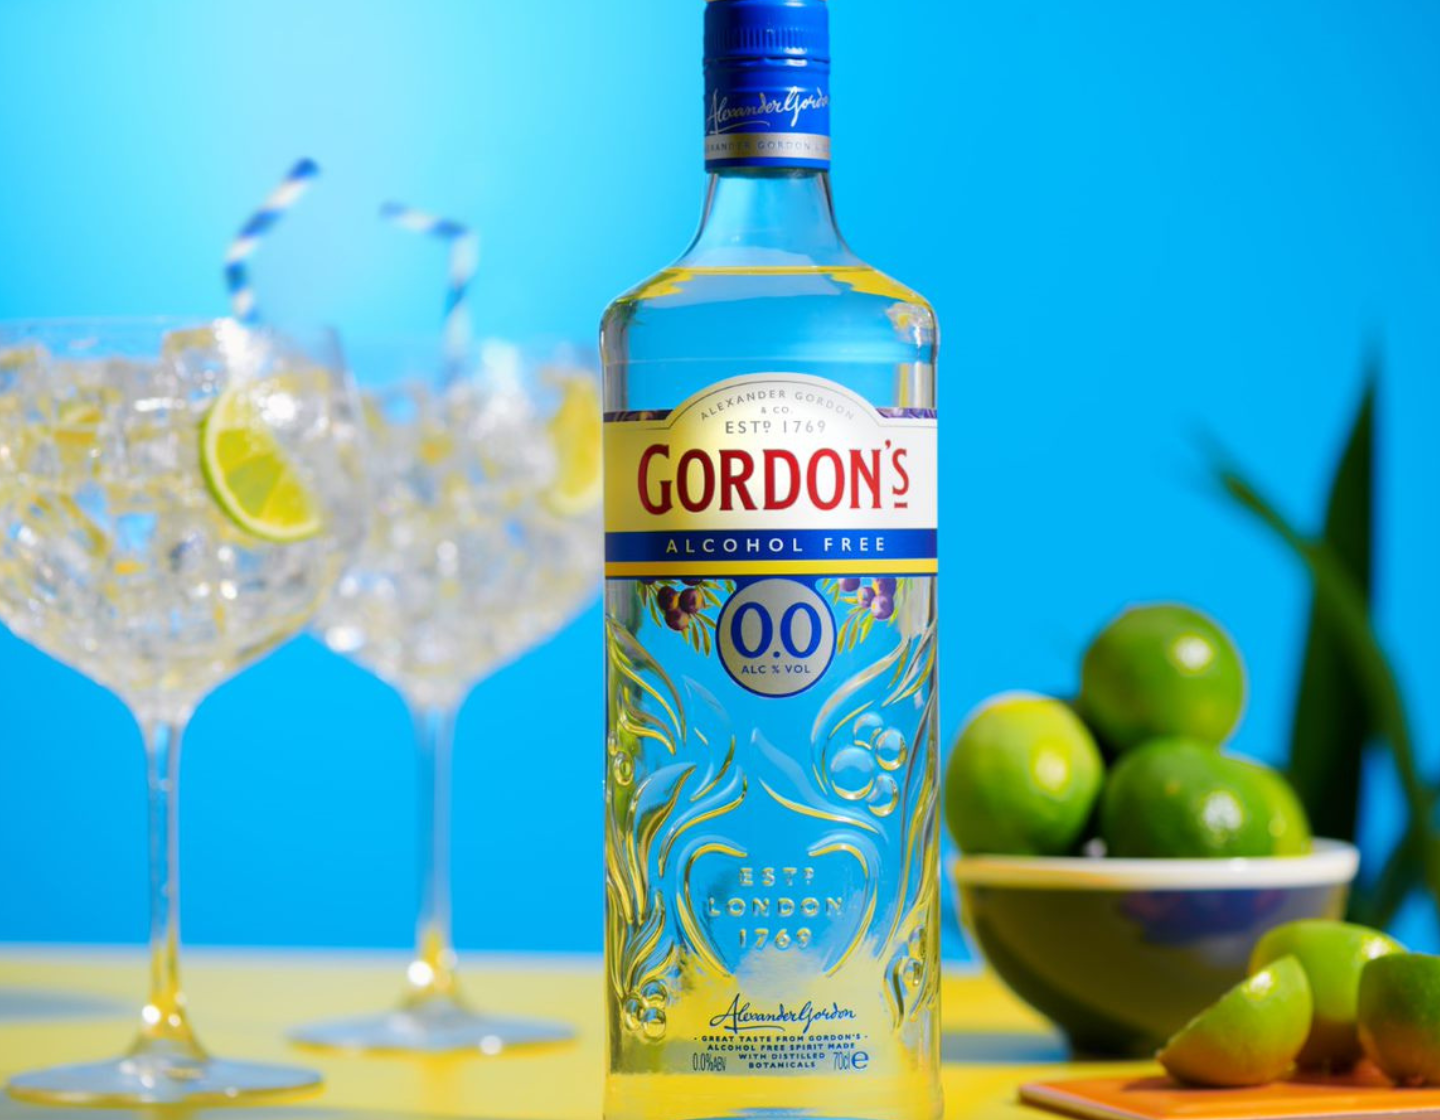 Botella de Gordon's 0.0% sin alcohol junto a dos vasos de G&T